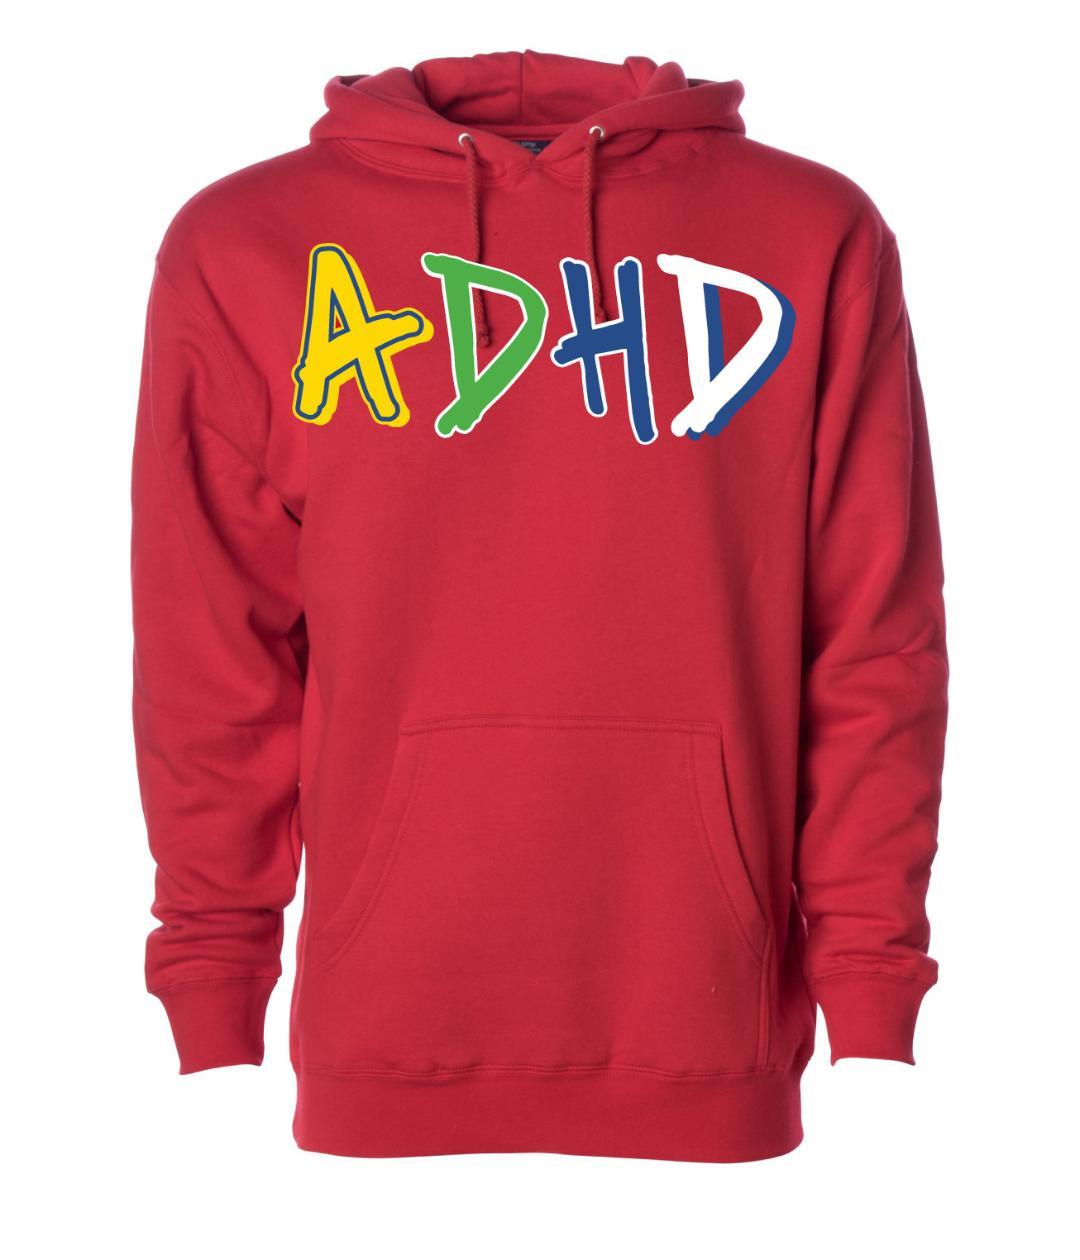 Red ADHD Hoodie